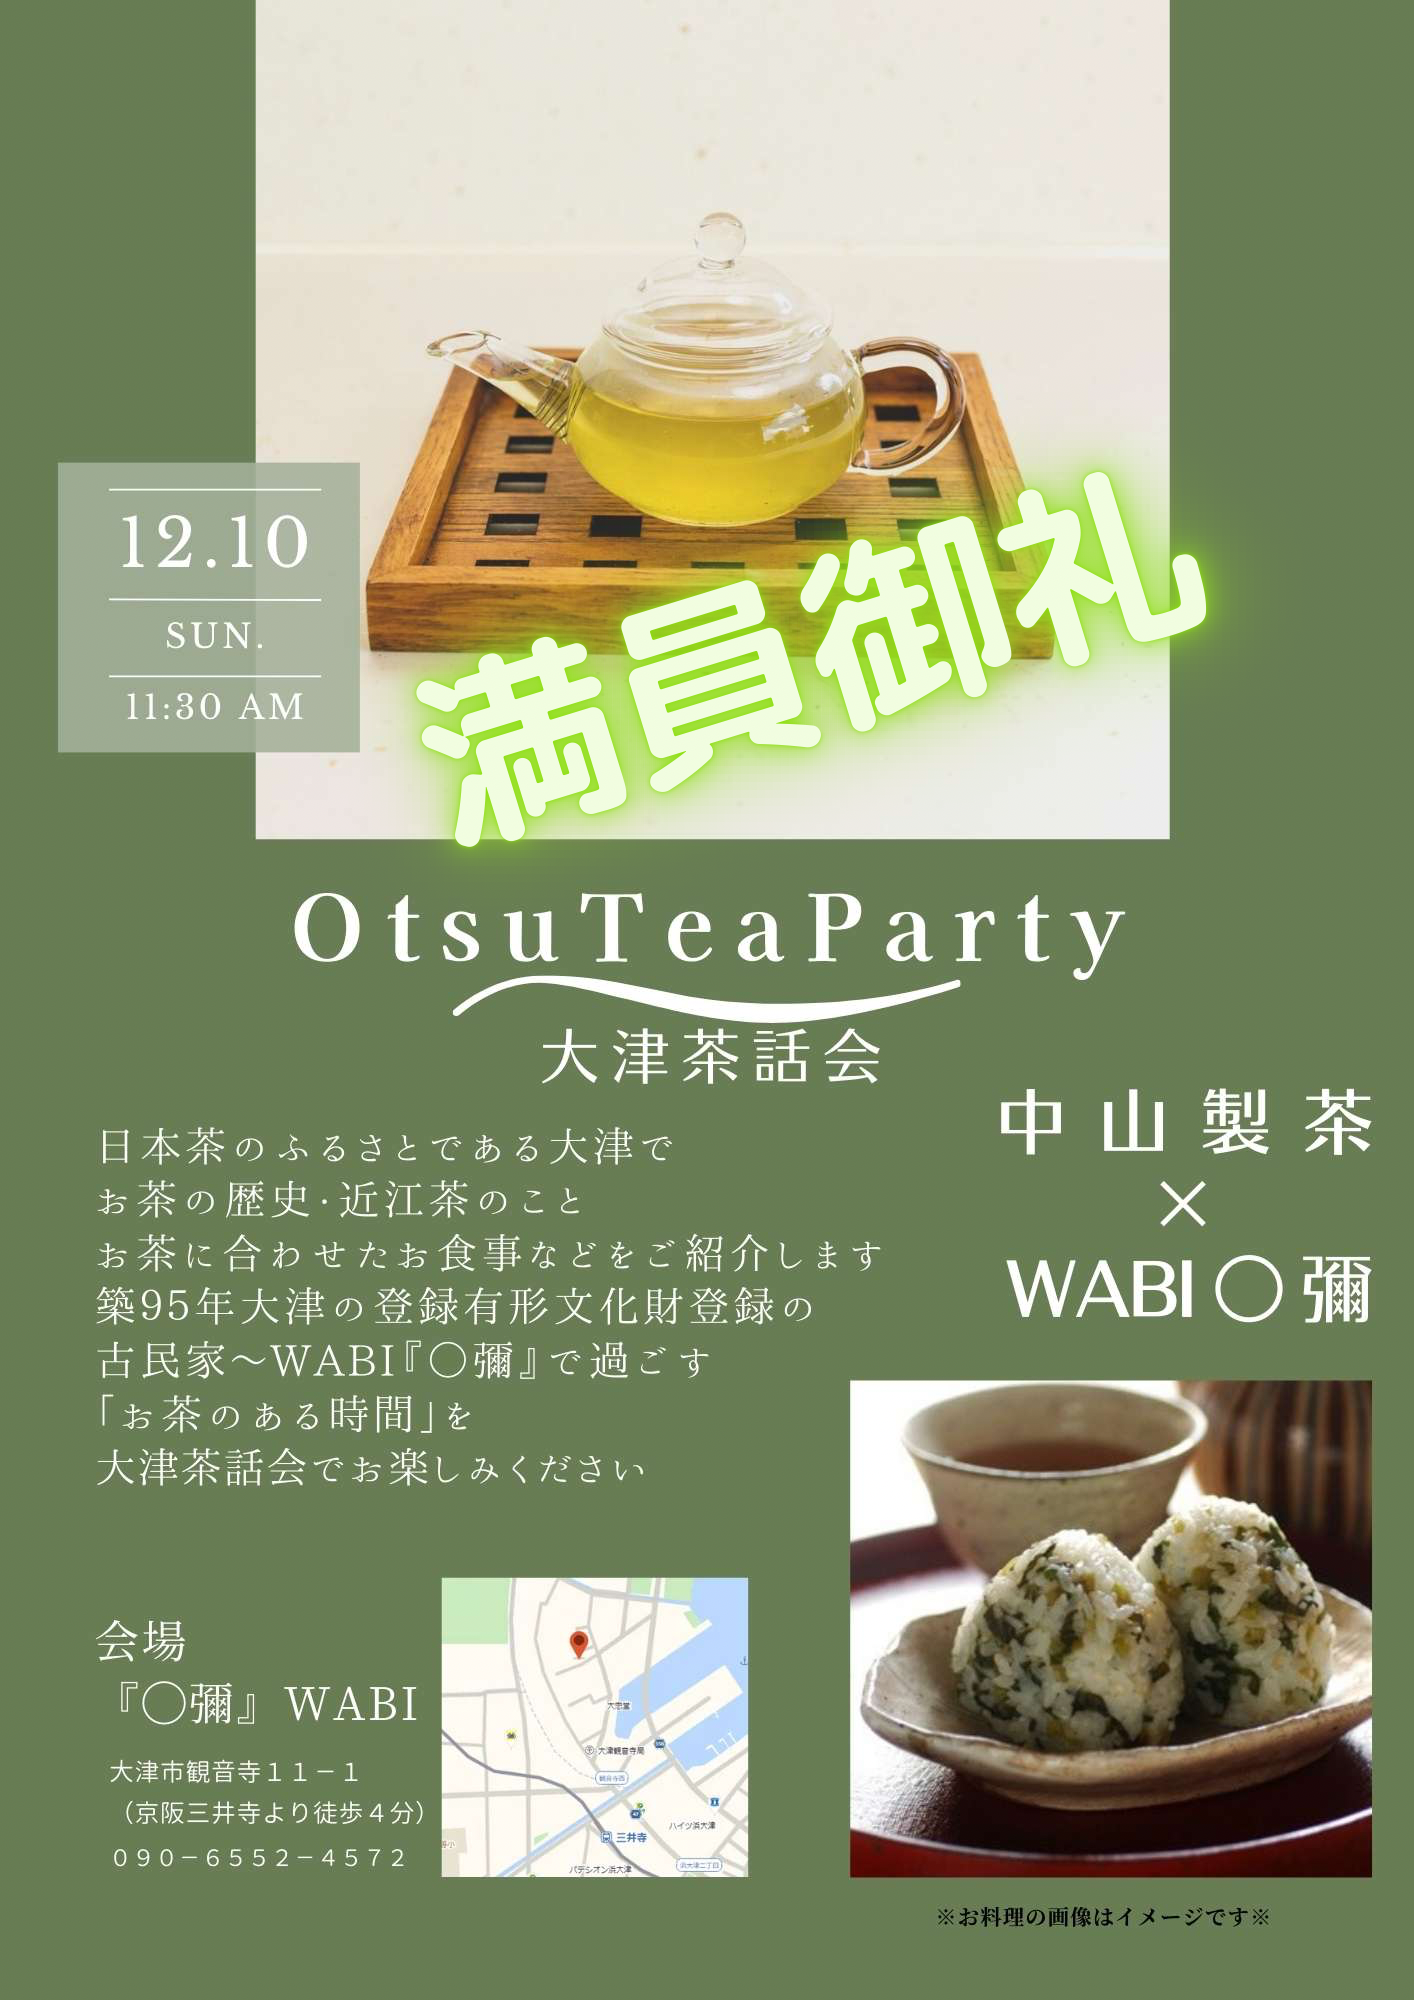 満員御礼 12月10日OTSU TEA PARTY